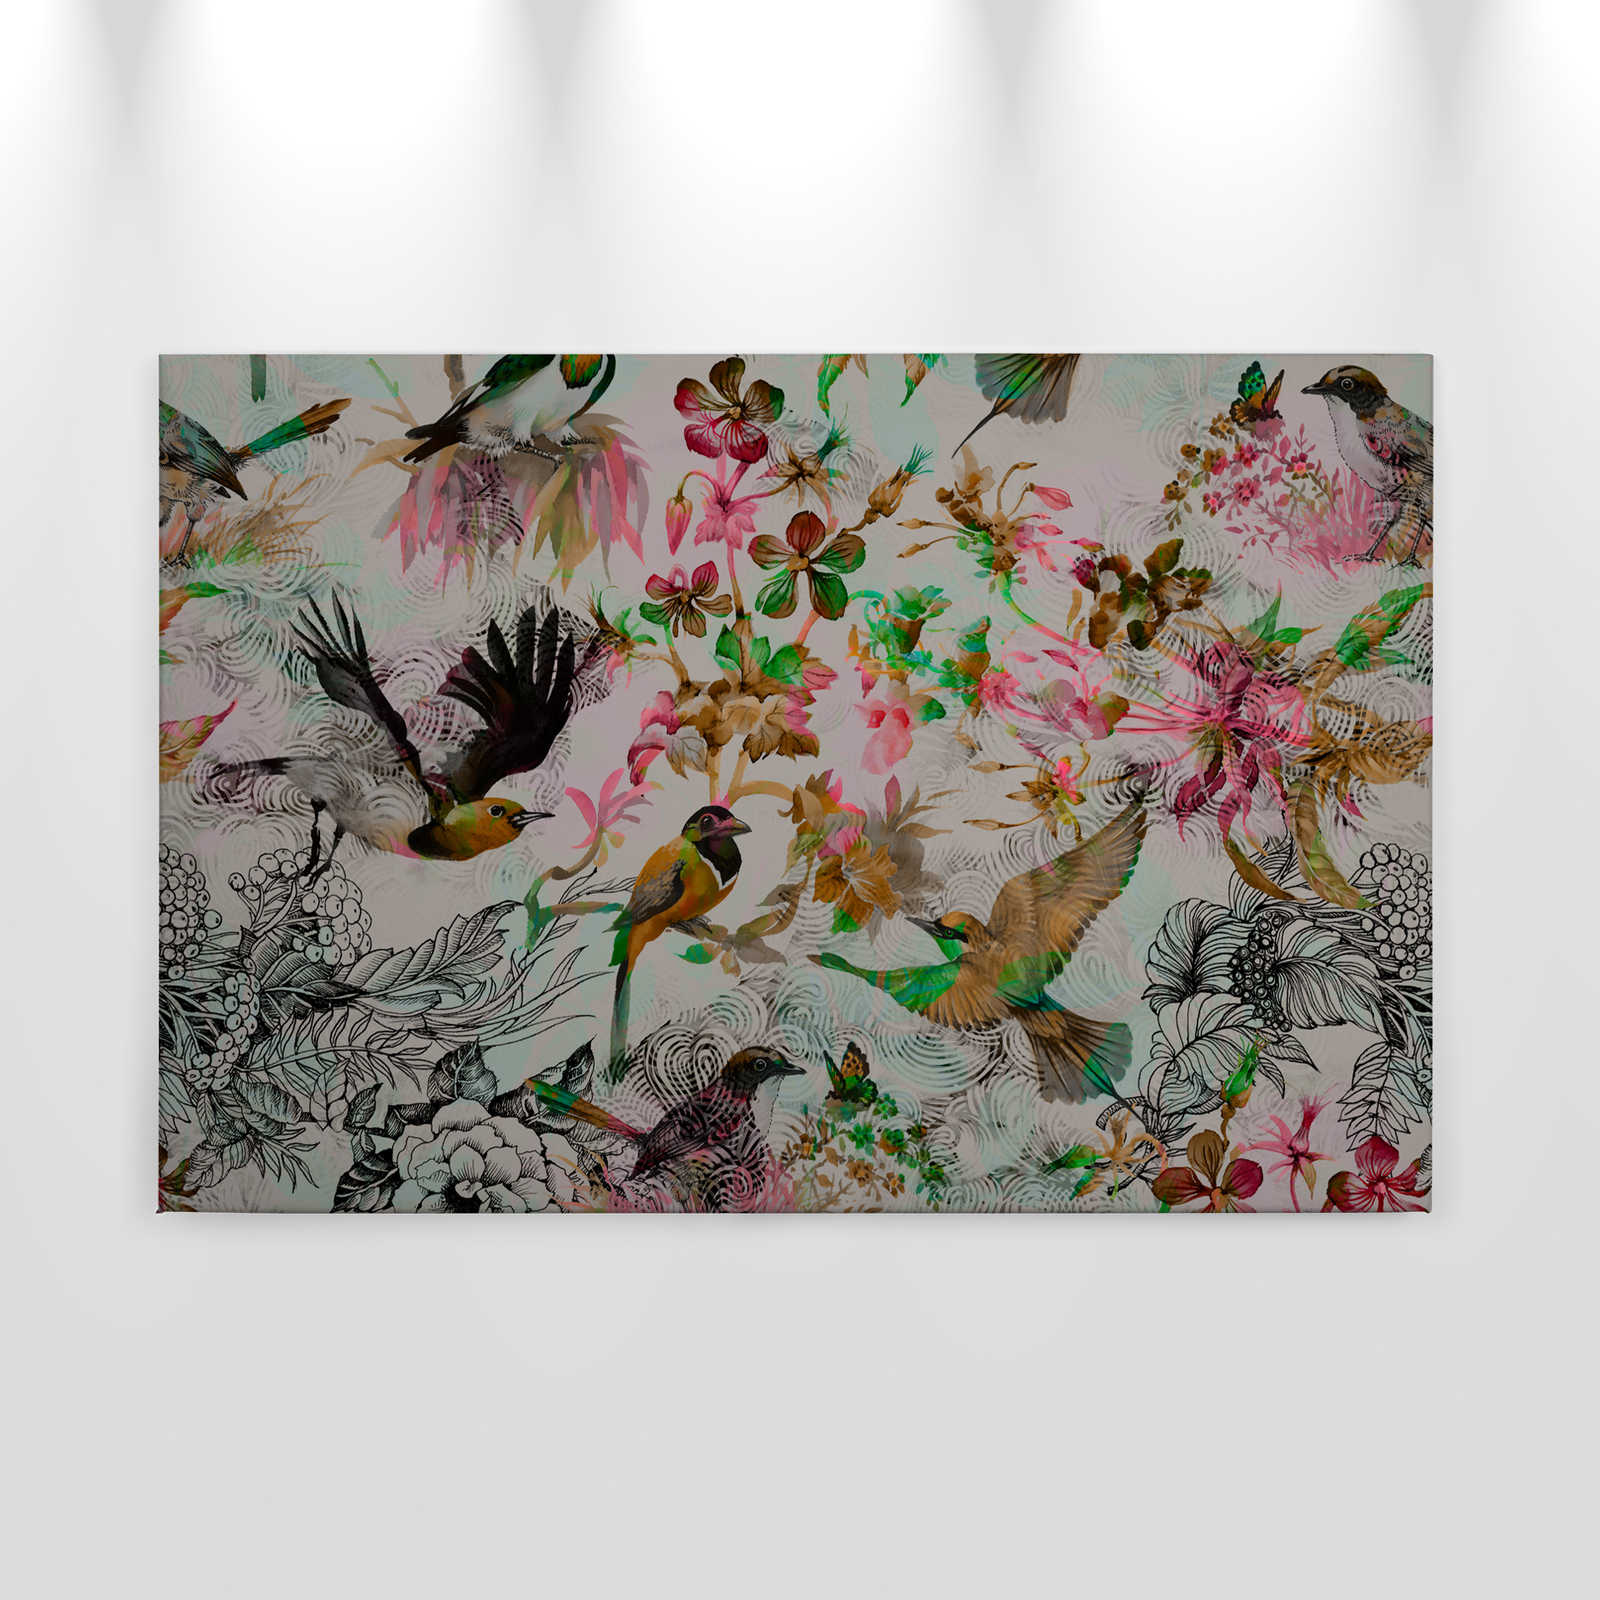             Tableau toile Oiseaux & fleurs style collage - 0,90 m x 0,60 m
        